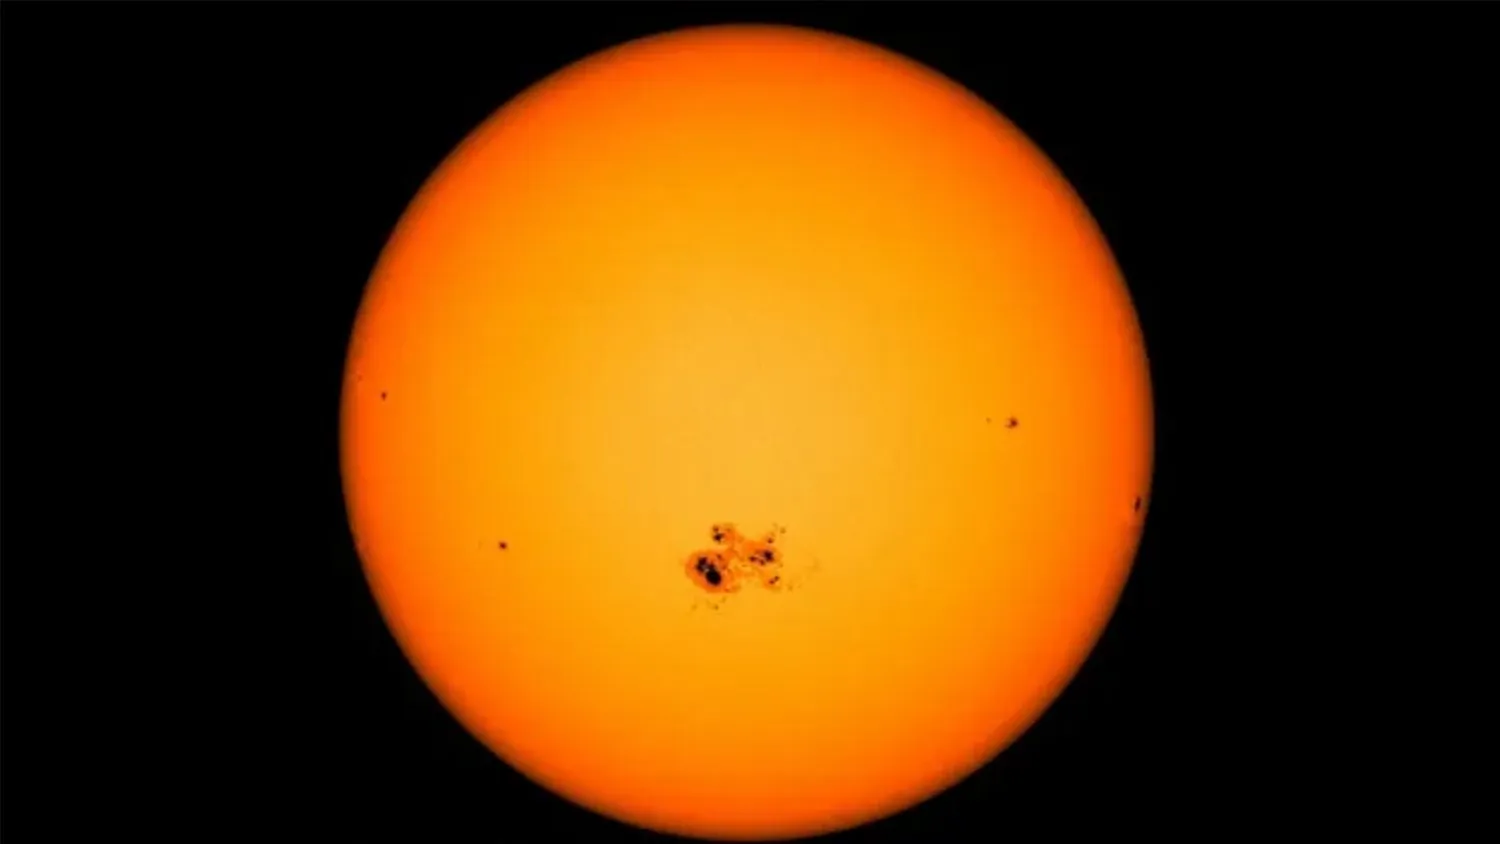 Sonnenflecken - kühlere Regionen auf der Sonnenoberfläche, die eruptive Störungen wie Sonneneruptionen und koronale Massenauswürfe hervorrufen können.